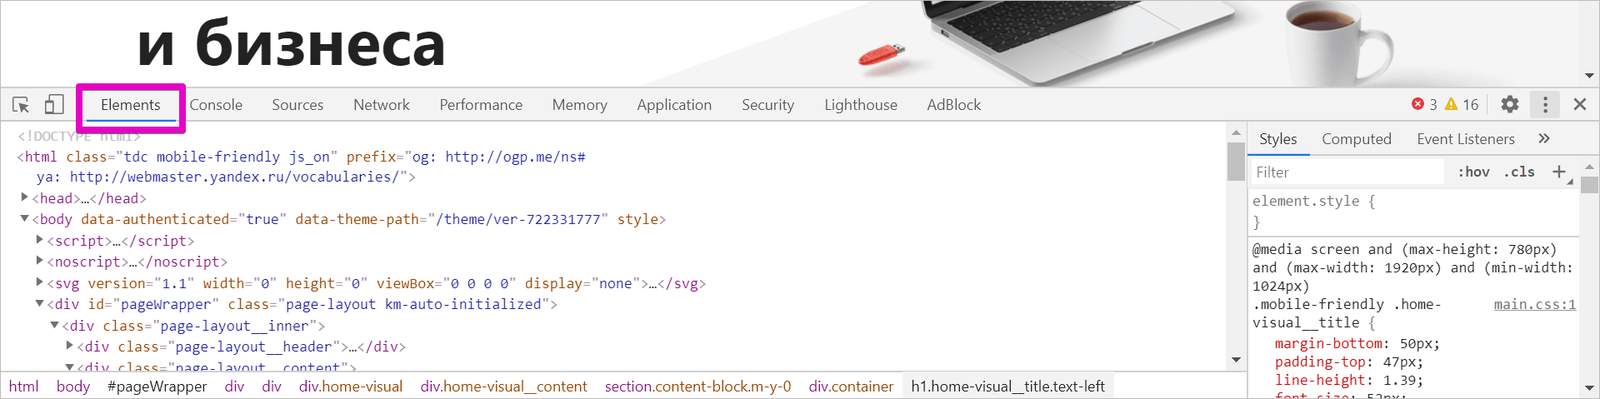 Инструменты разработчика для проектировщика. Про HTML и CSS 2